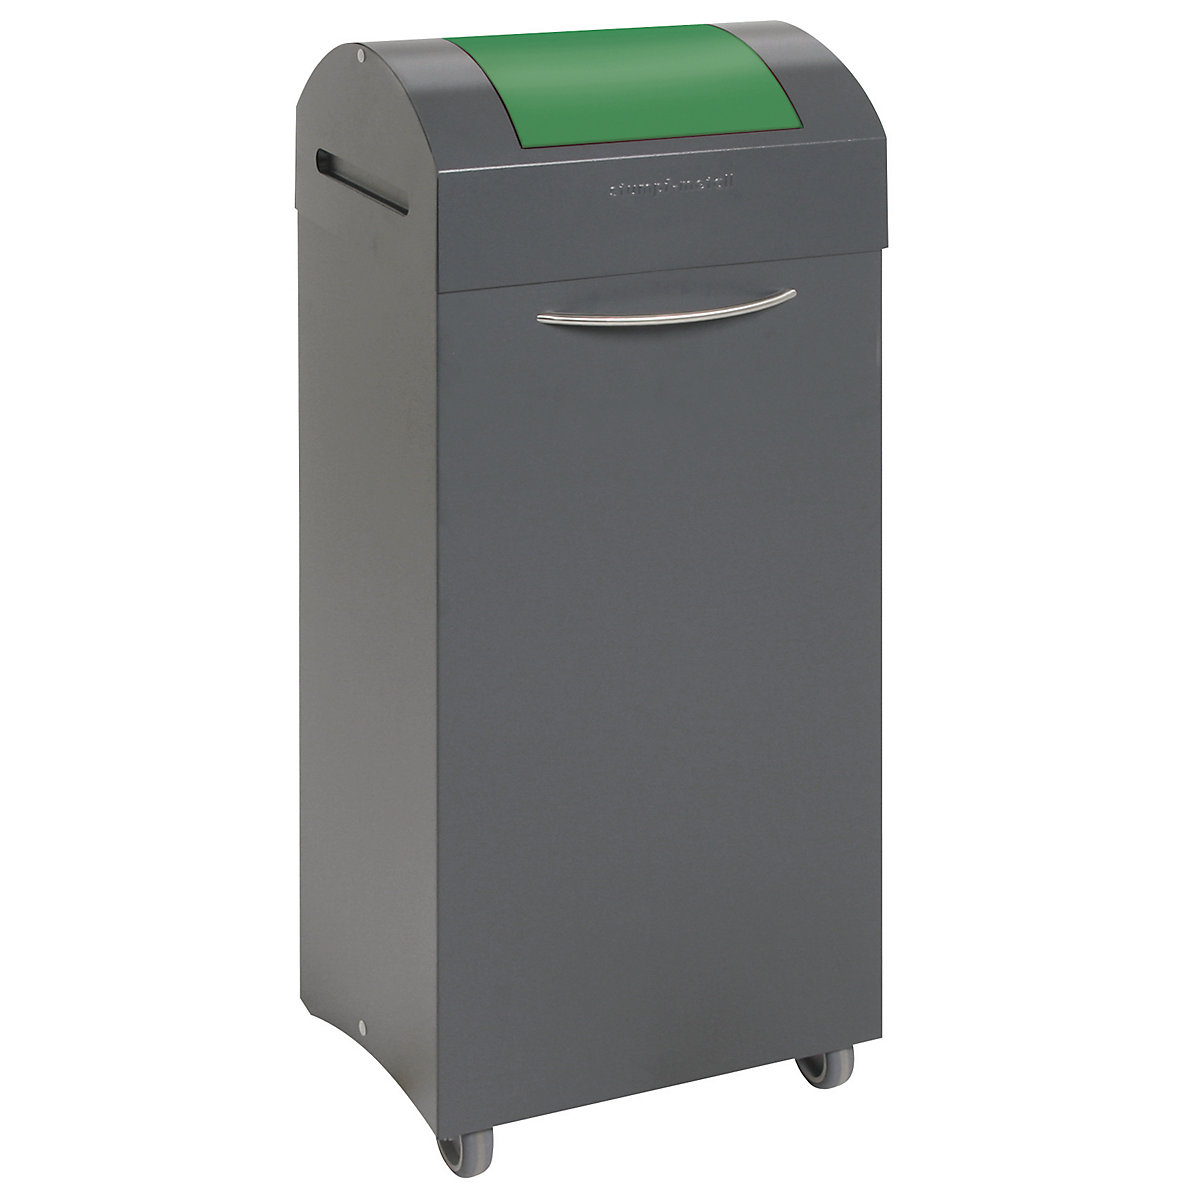 Coletor de materiais recicláveis, autoextintor, volume 75 l, LxAxP 380 x 940 x 320 mm, tampa de introdução verde trânsito-7